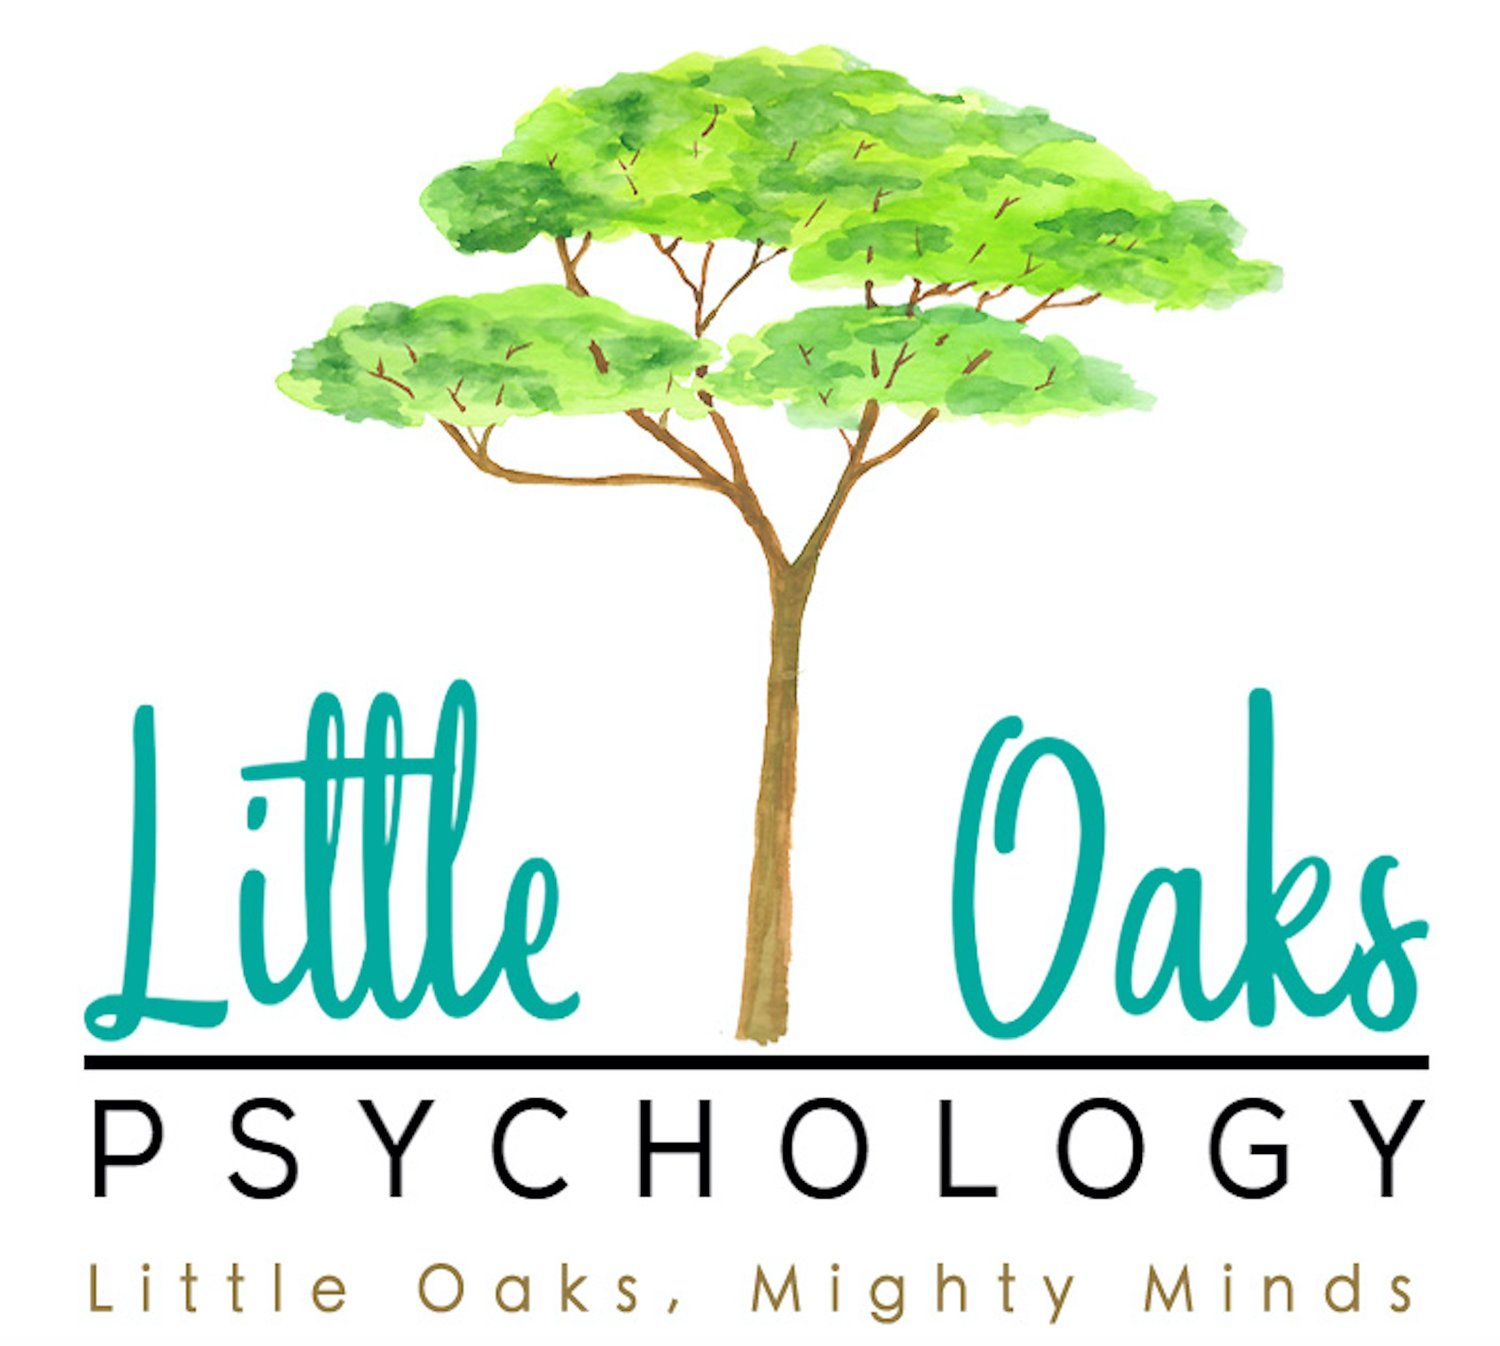 Little Oaks Psychology